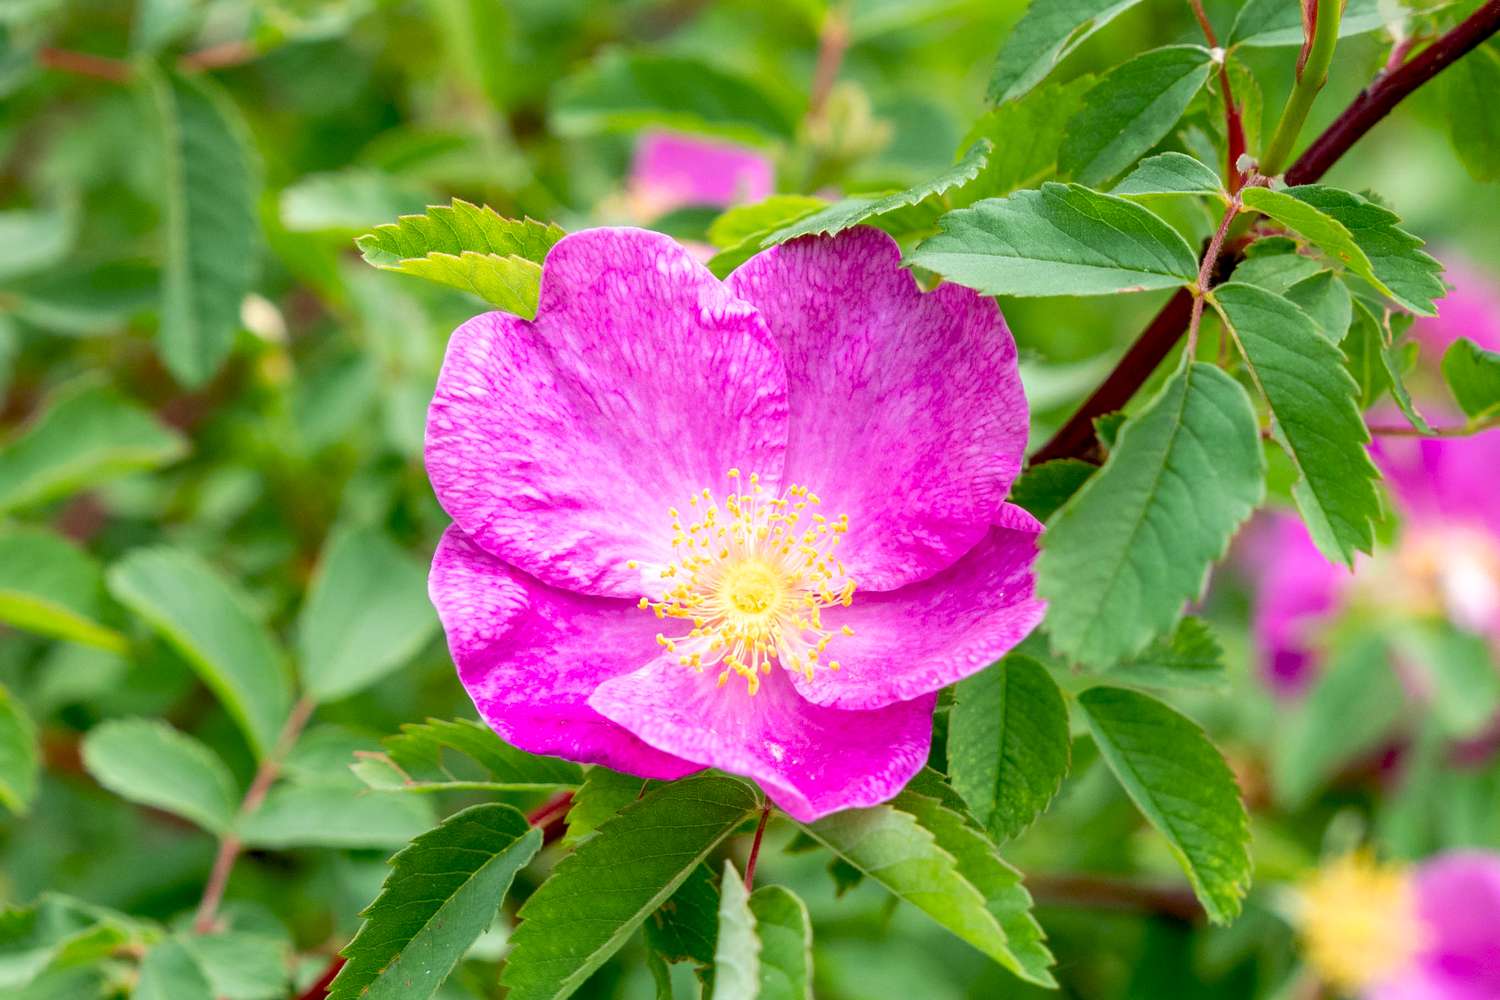 Carolina-Rose mit fuchsia-rosa Blütenblättern und gelben Staubbeuteln am Stiel mit umliegenden Blättern